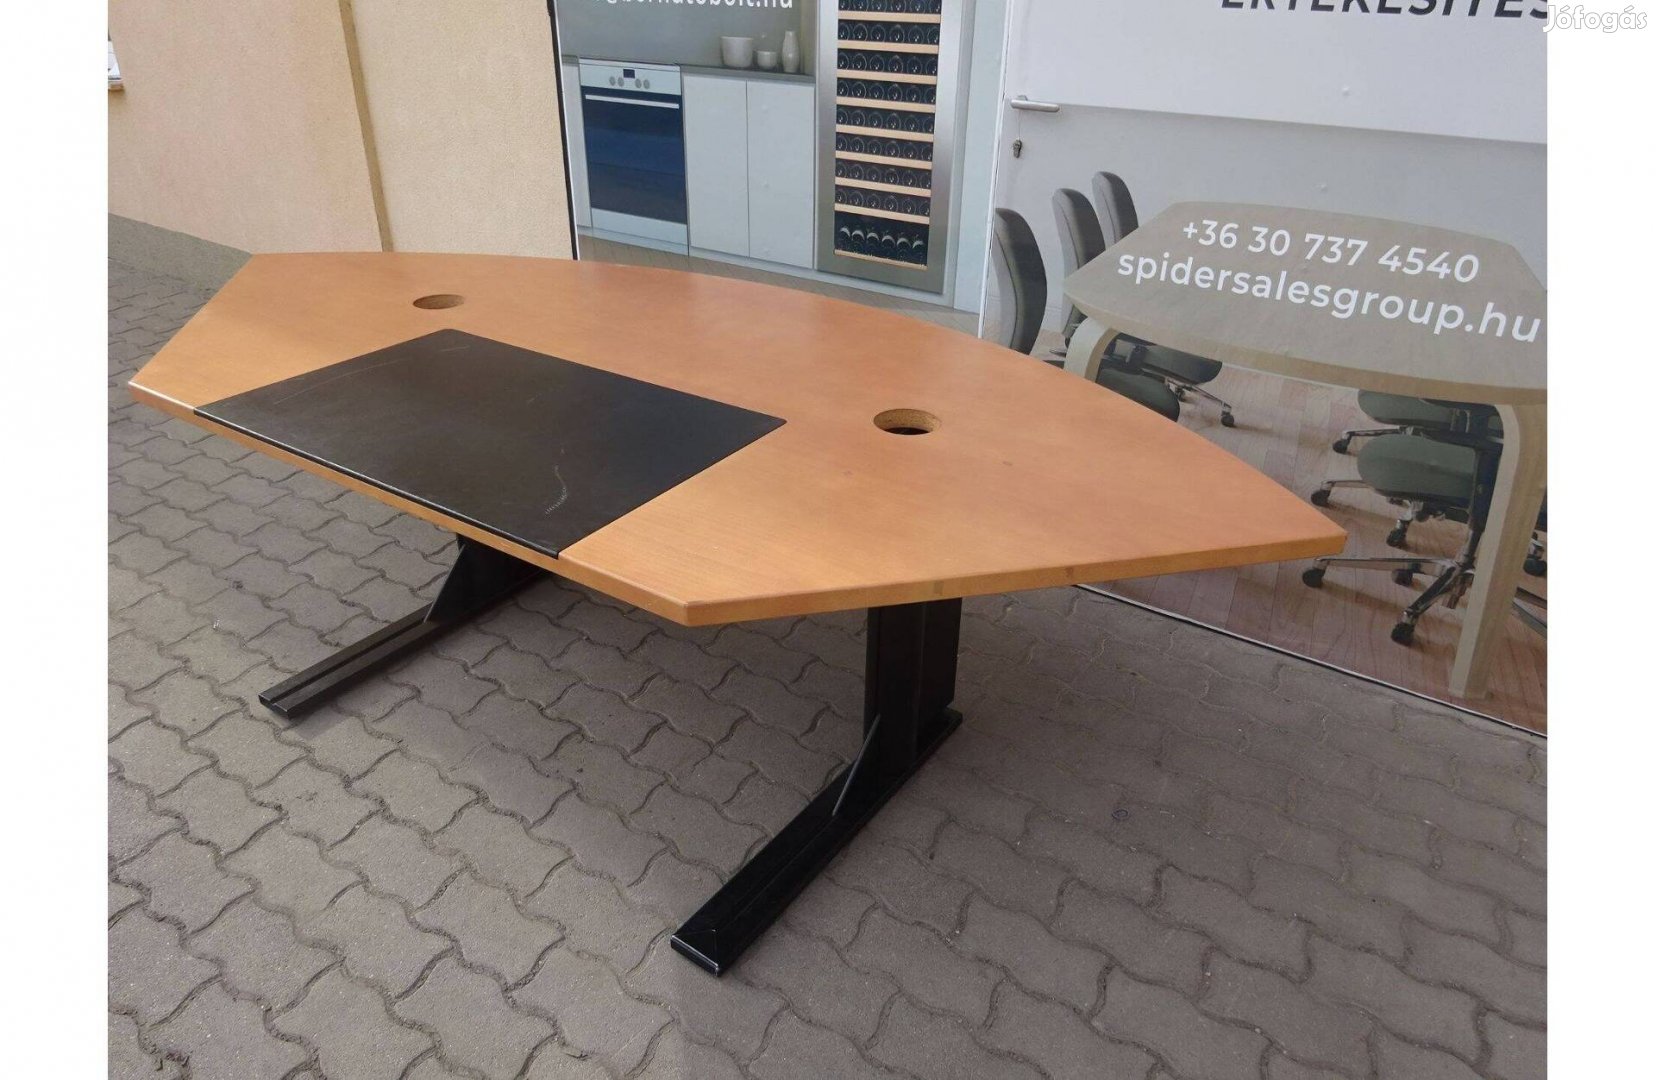 Főnöki asztal, íróasztal 240x100 cm, bükk színű - használt irodabútor